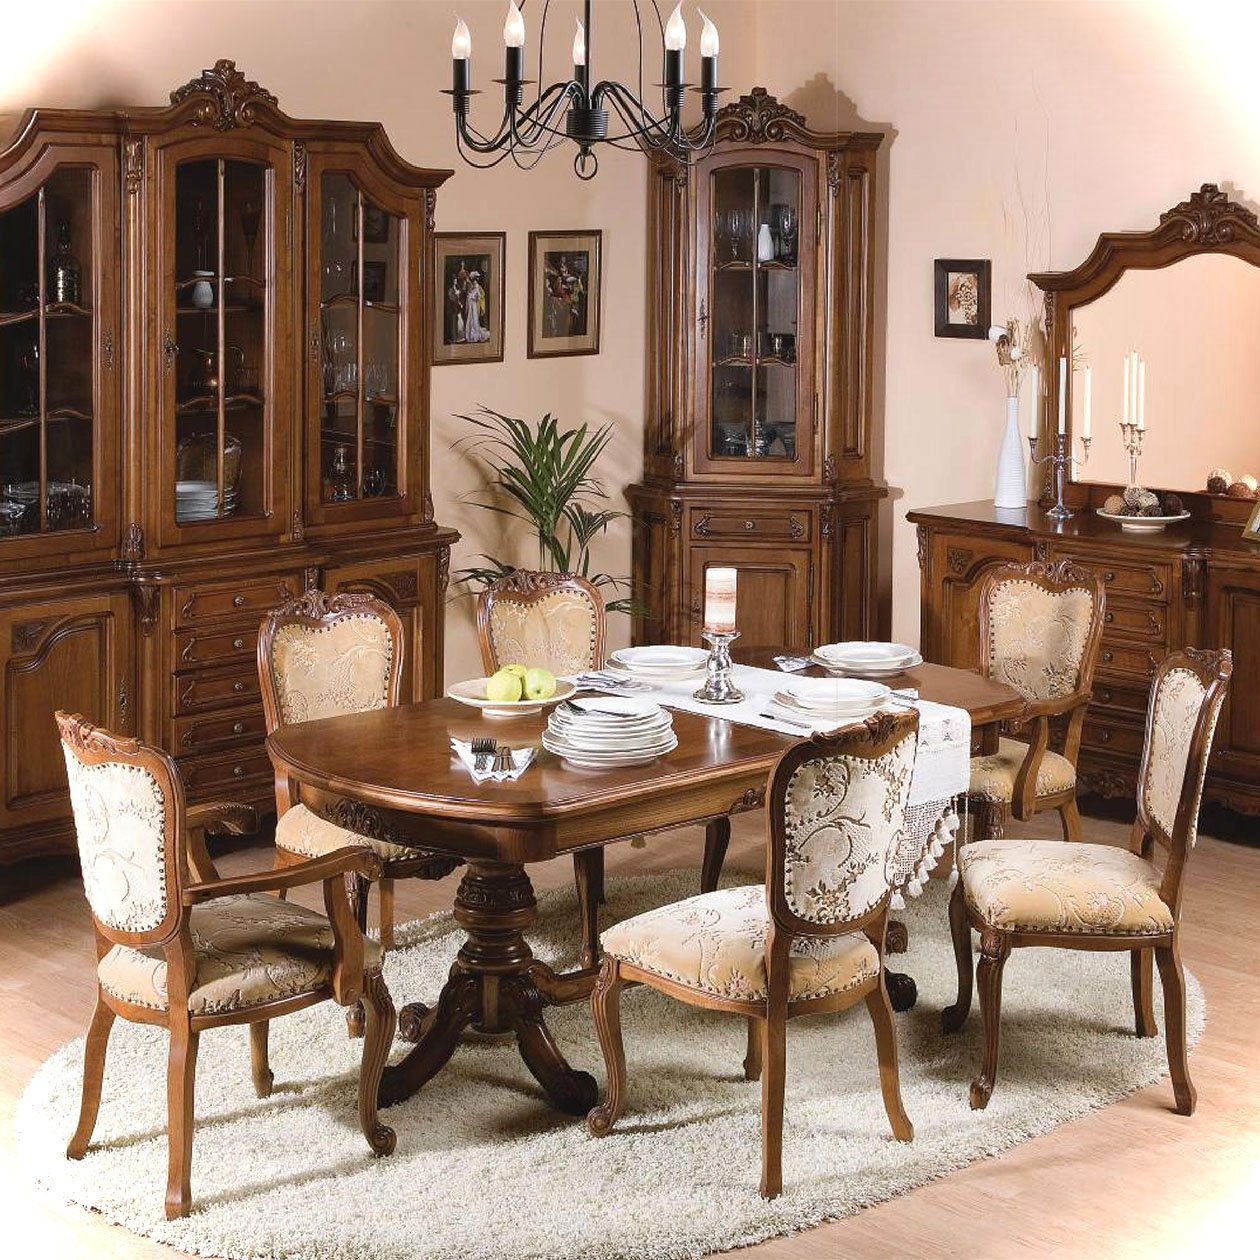 Мебель из румынии каталог цены